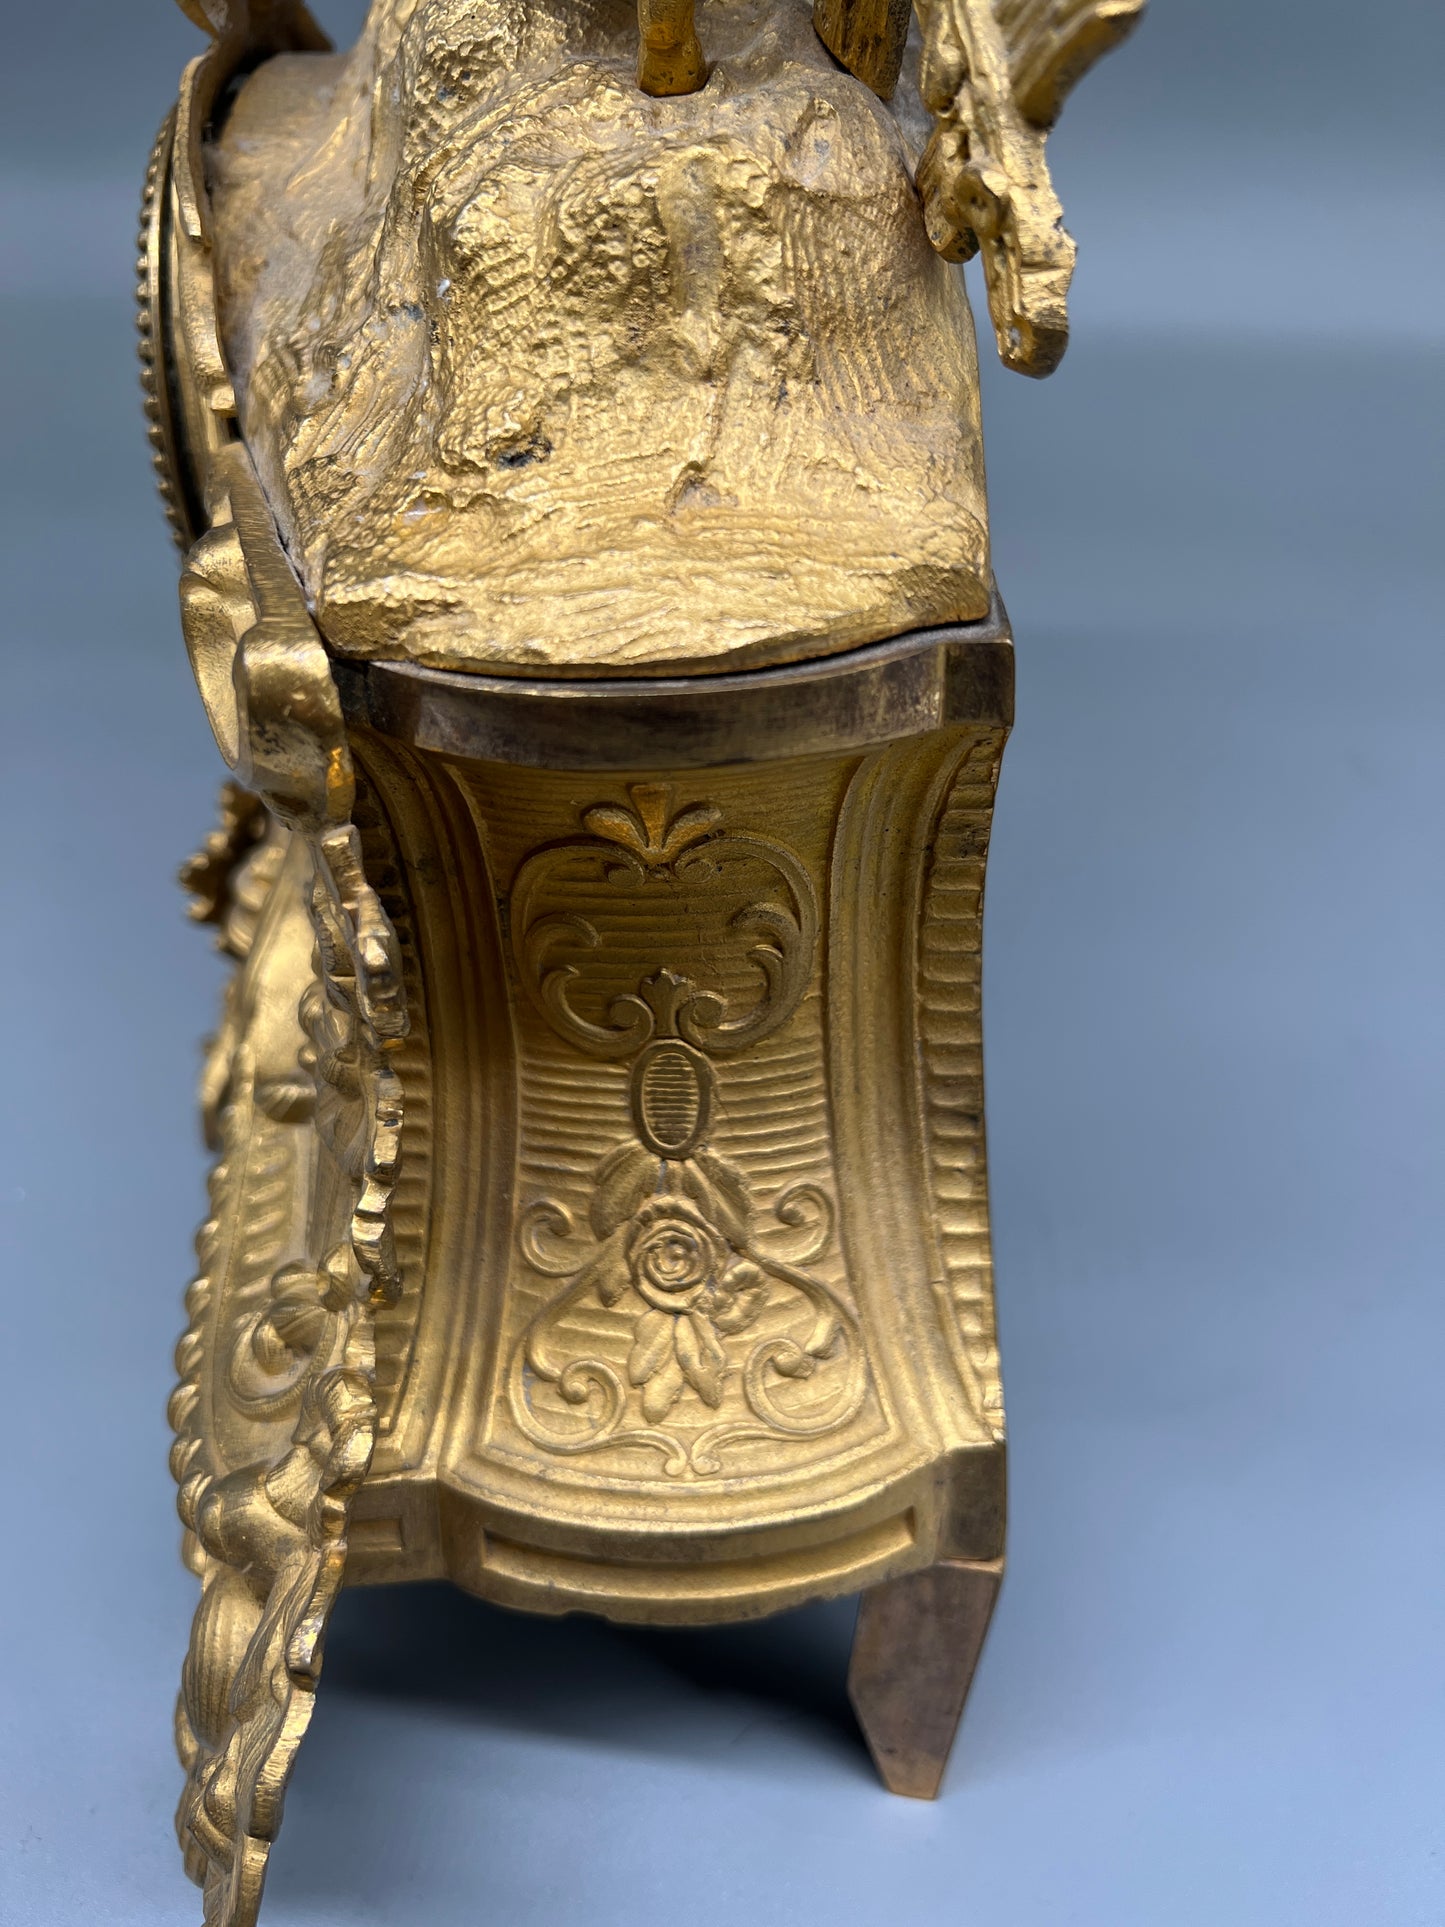 Antike Kaminuhr im Französischen Romantik-Stil aus Zamak - 1850-1900